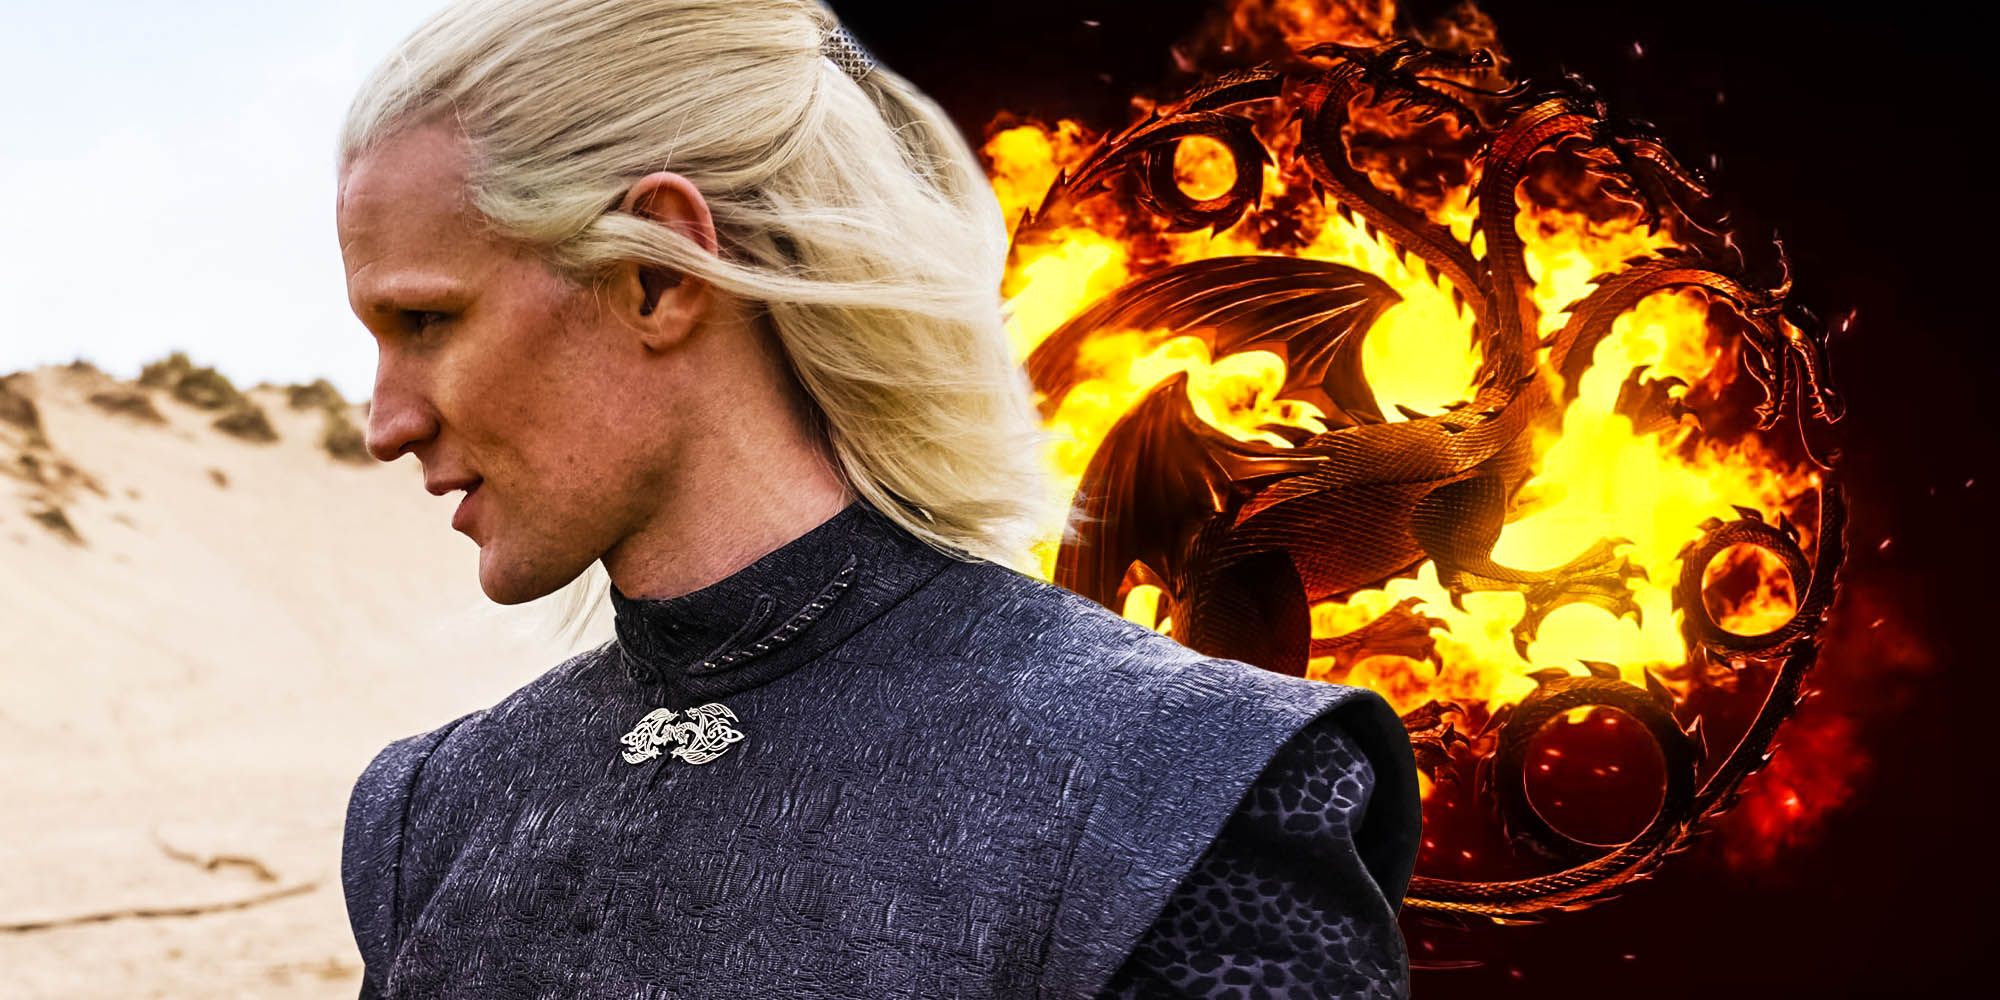 Who Is Matt Smith's House Of The Dragon Character? Daemon Targaryen Explained